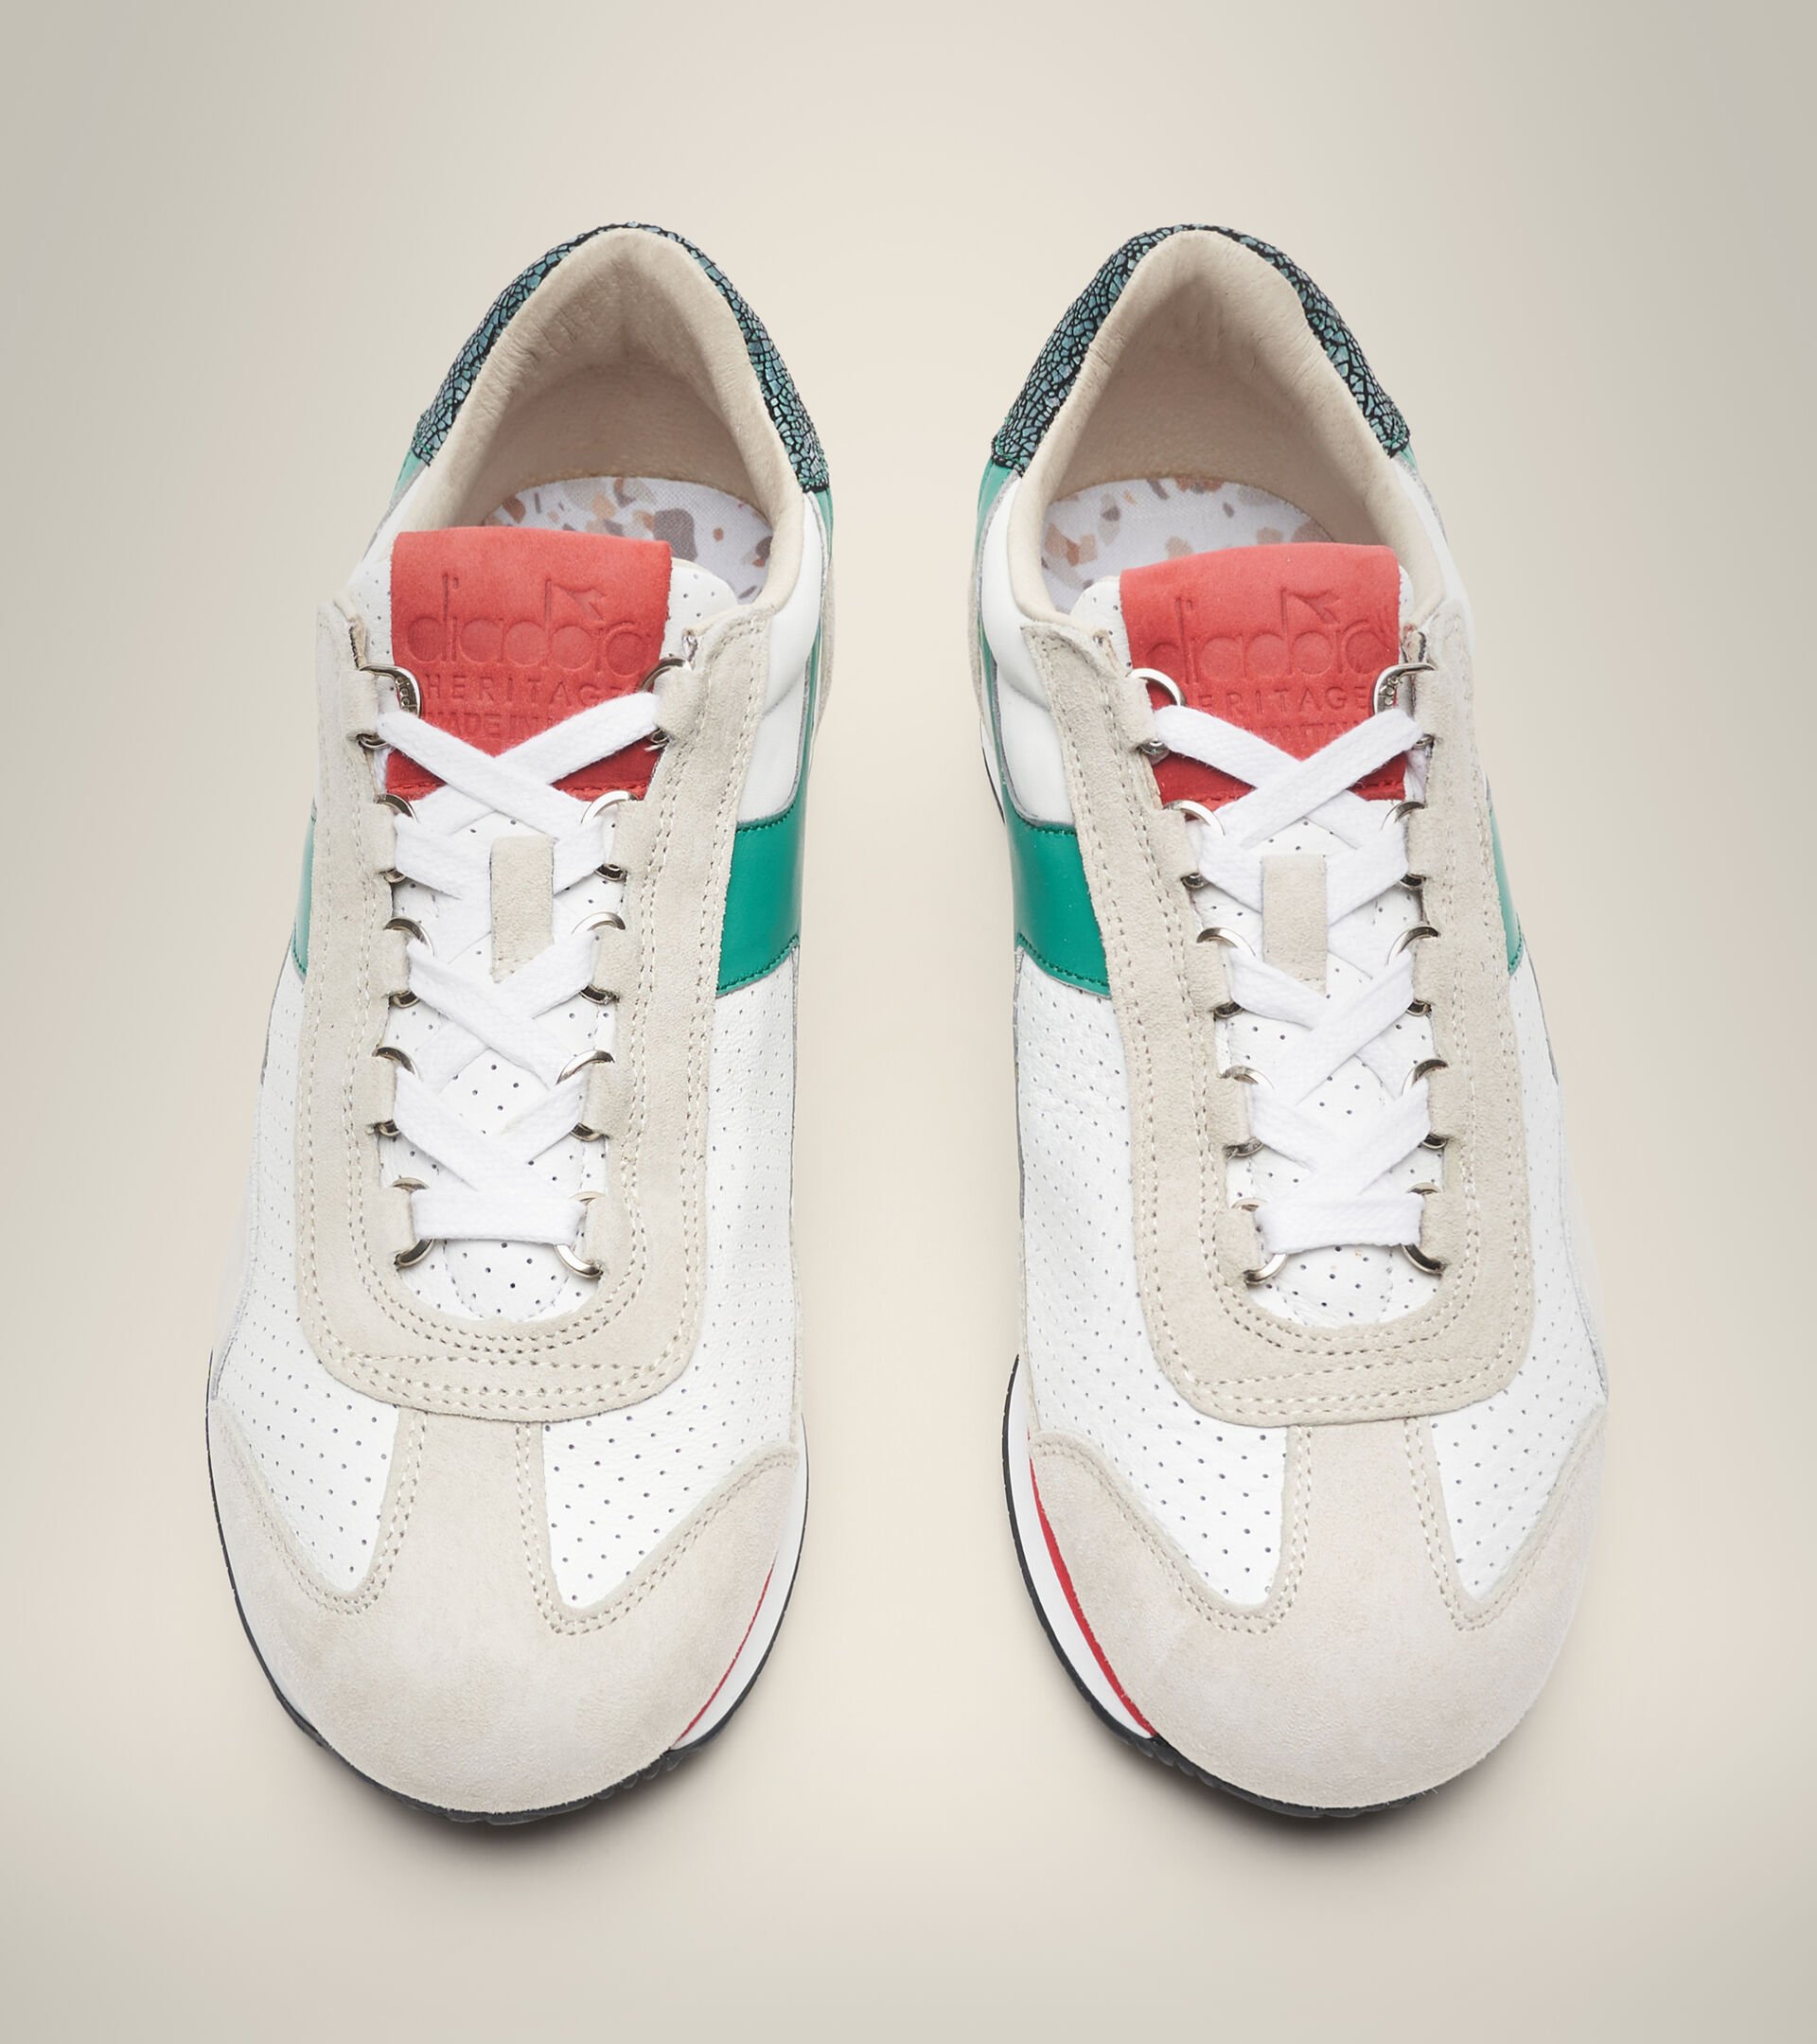 Heritage-Schuh Made in Italy - Herren EQUIPE ITALIA BLANC/LAC VERT - Diadora